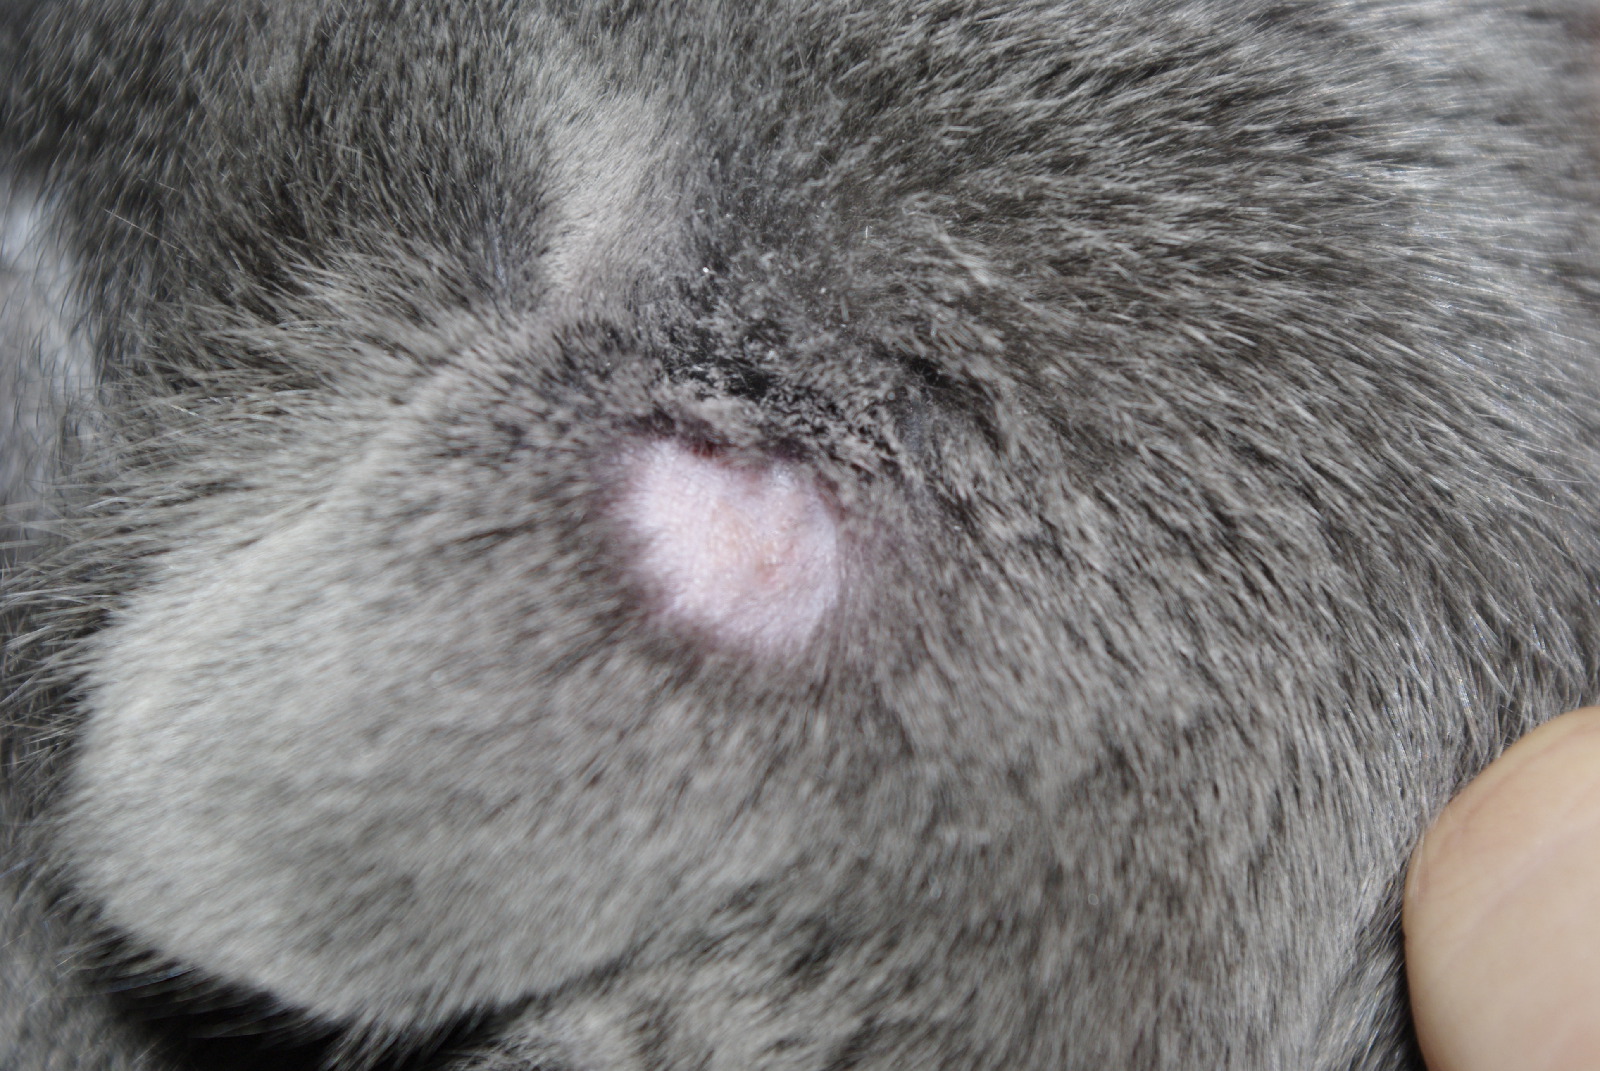 Лишай у кошек и котов: фото, признаки, симптомы и лечение в ...